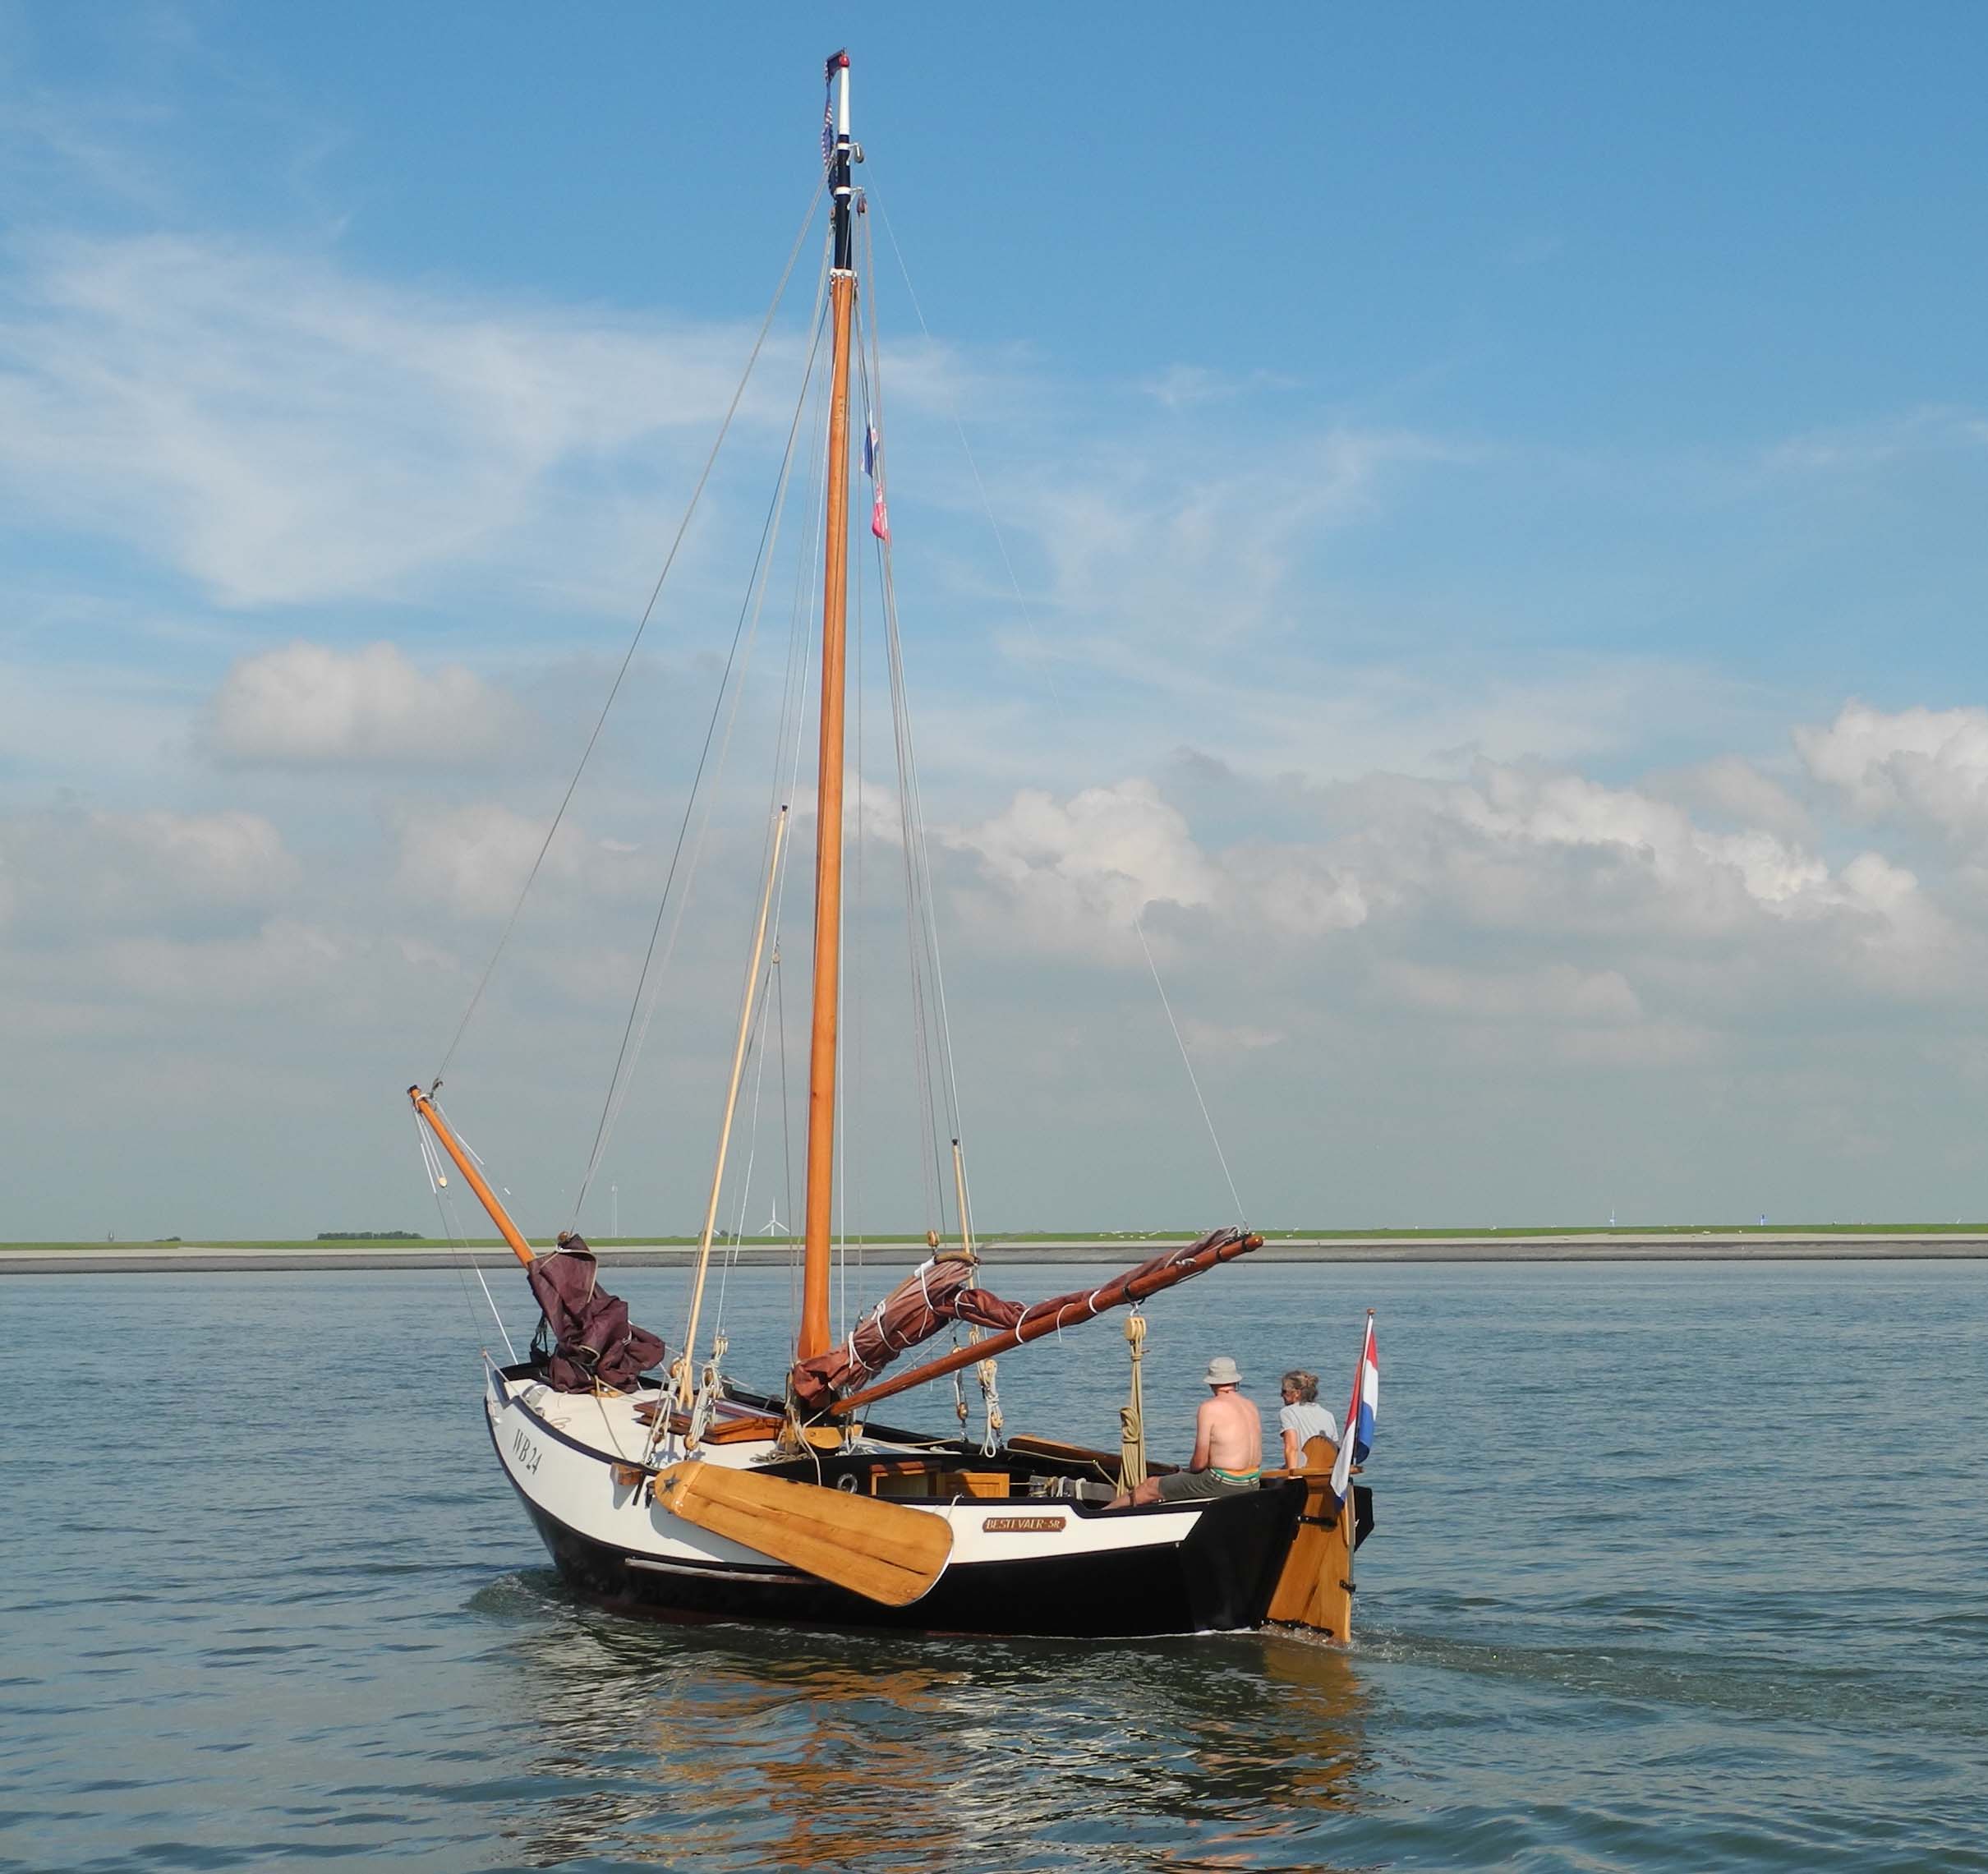 Tag 4 Zurück zum Ijsselmeer: Bummelfahrt im Boontjes Gat. Kaum wind, segeln mit 1,5 kn Fahrt. Also Unterwasserfock wie die anderen auch.